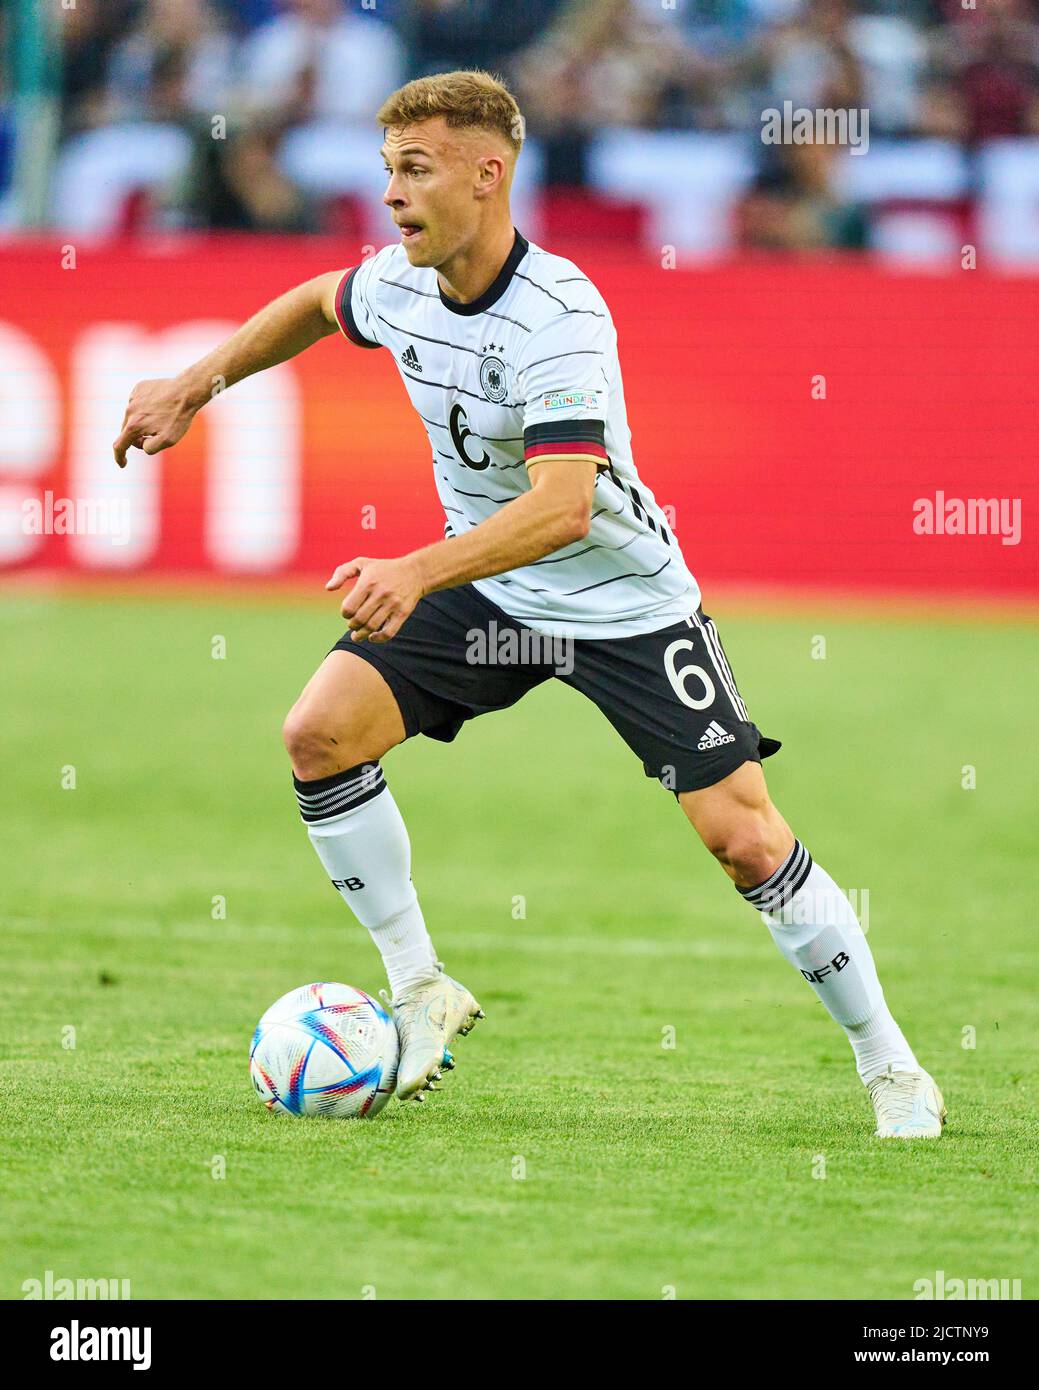 Joshua Kimmich, DFB 6 nella UEFA Nations League 2022 partita GERMANIA - ITALIA 5-2 nella stagione 2022/2023 giugno 14, 2022 a Mönchengladbach, Germania. © Peter Schatz / Alamy Live News Foto Stock